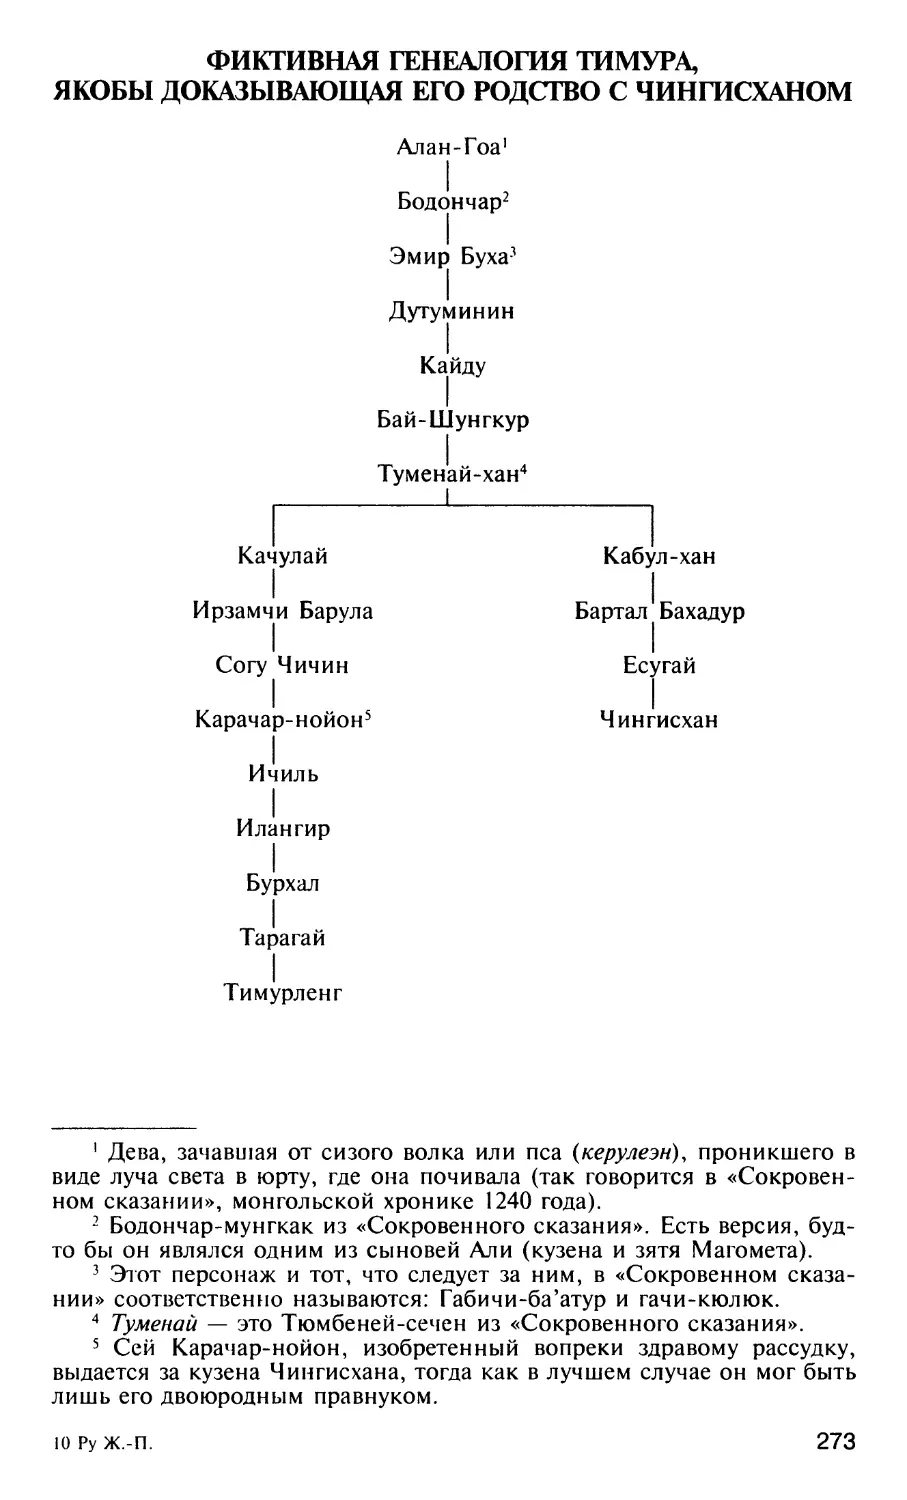 Фиктивная генеалогия Тимура, якобы доказывающая его родство с Чингисханом